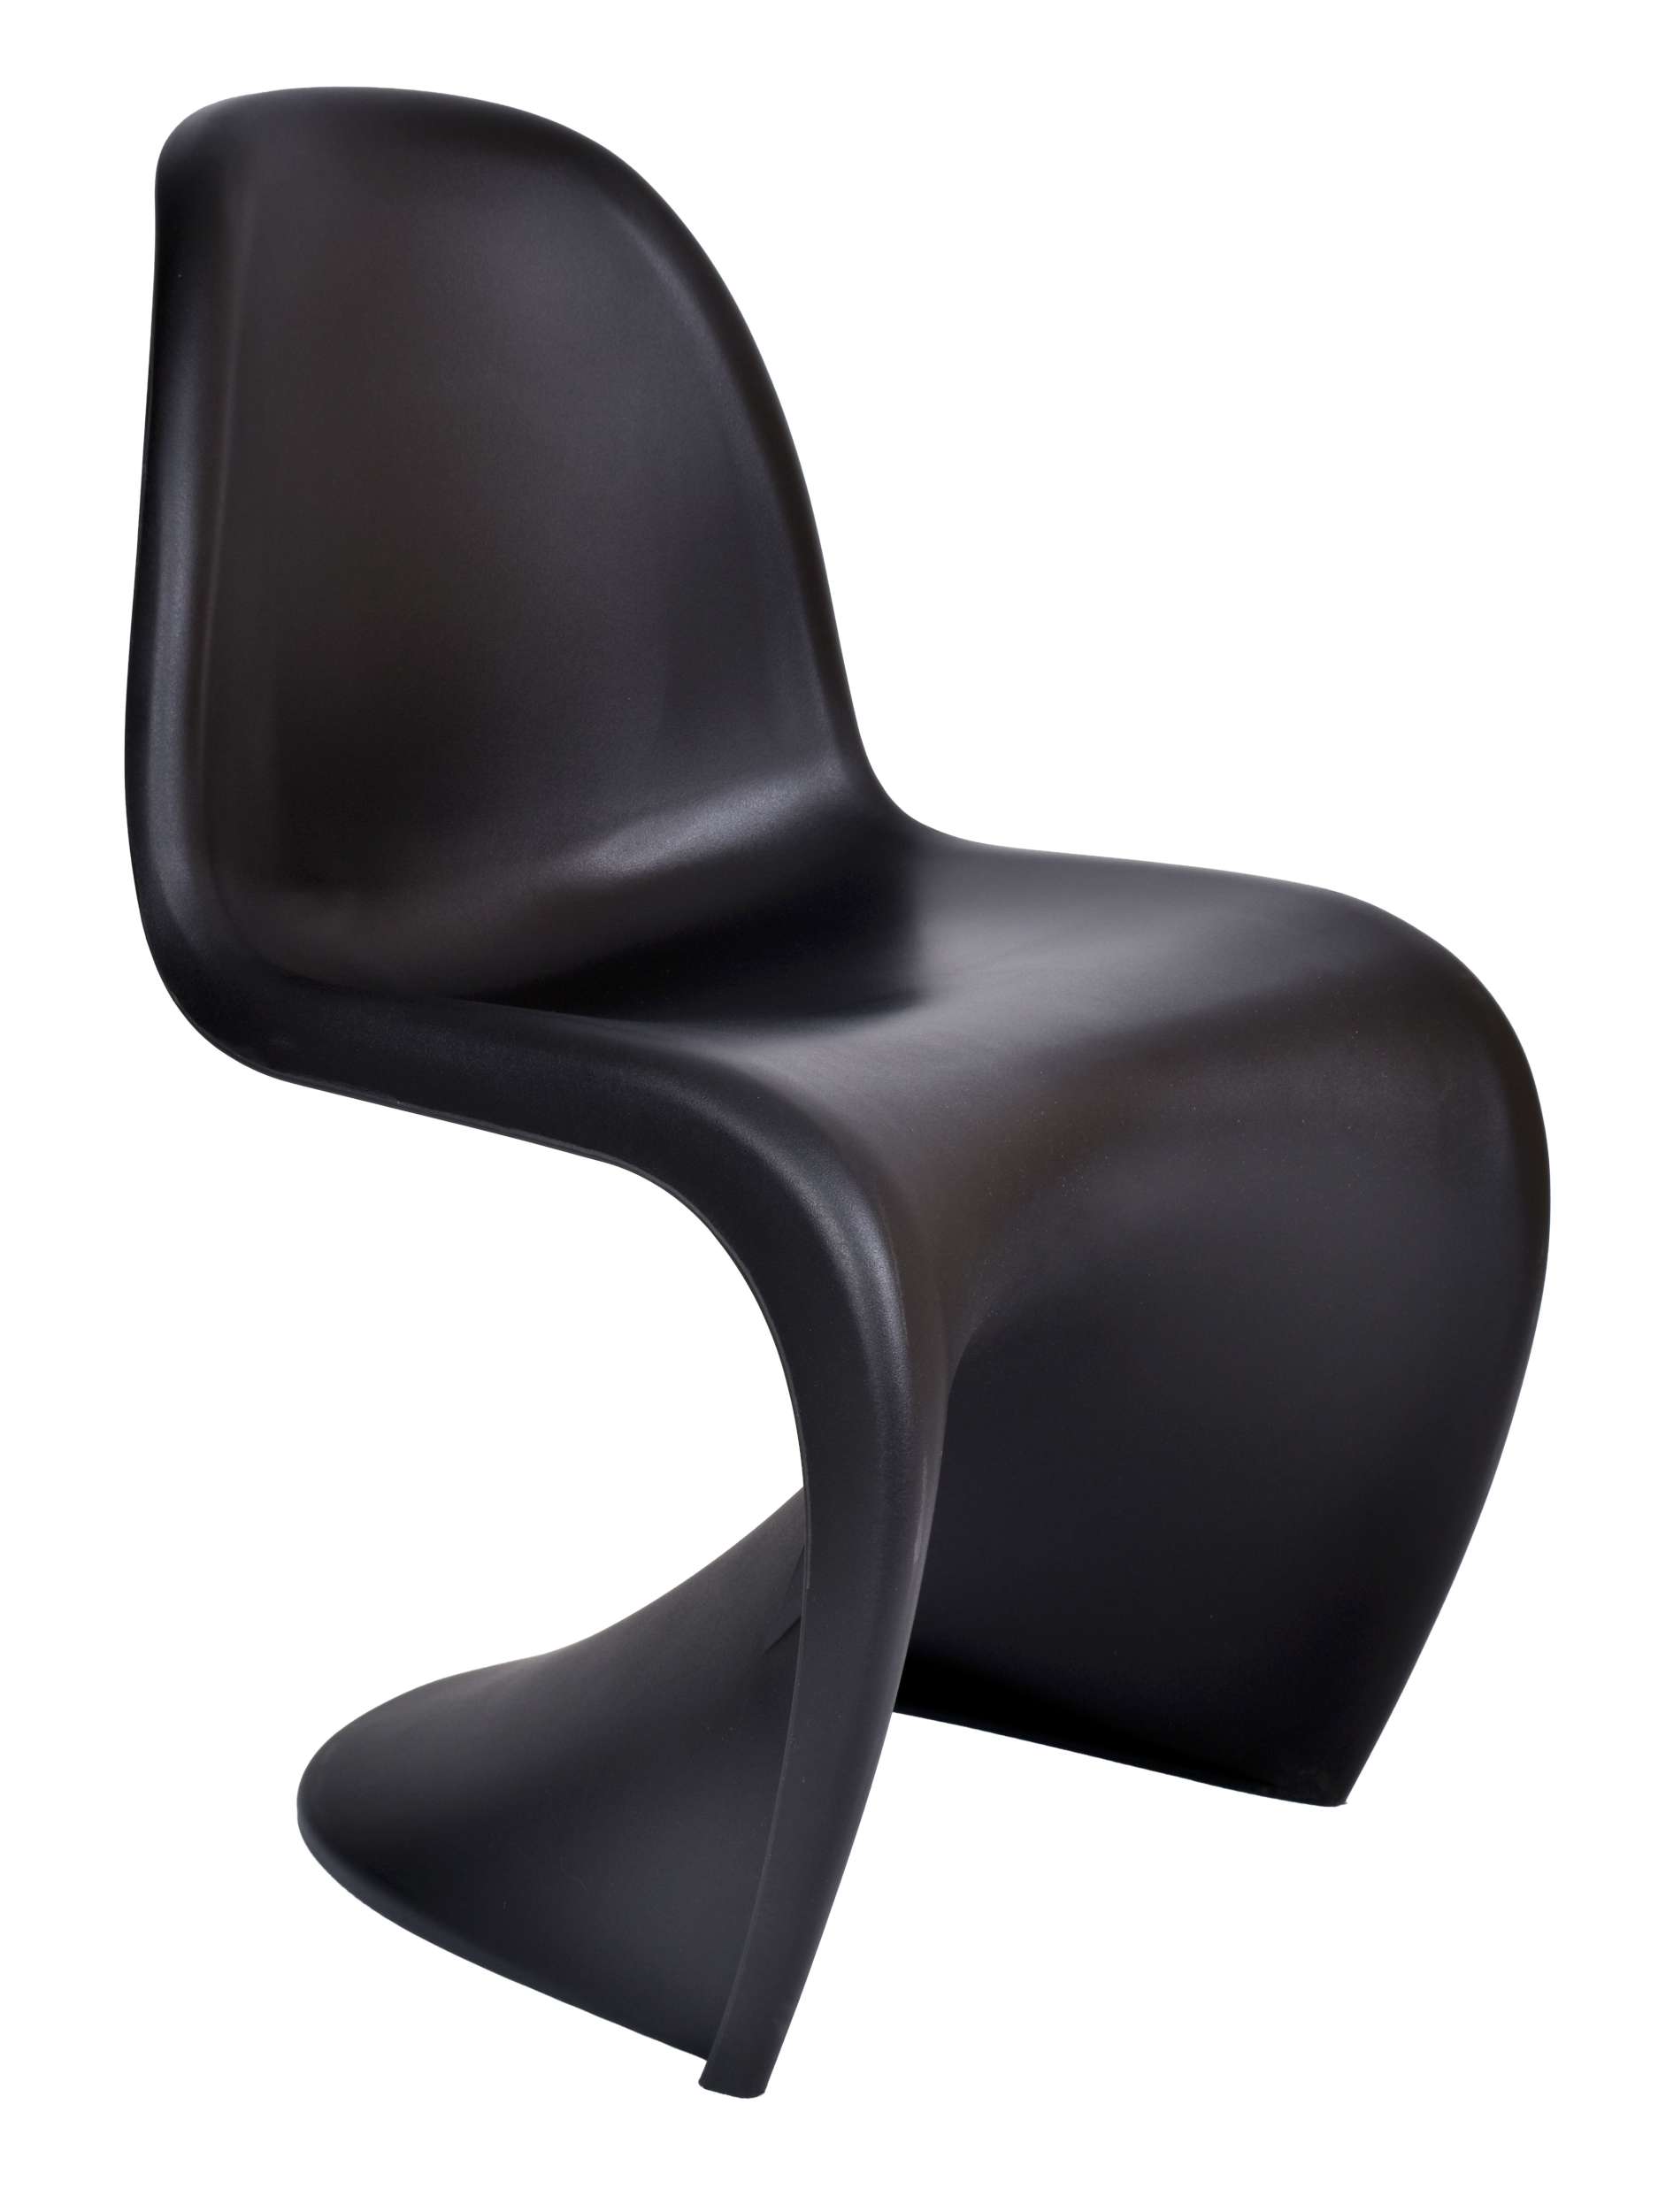 krzeslo nowoczesne casper